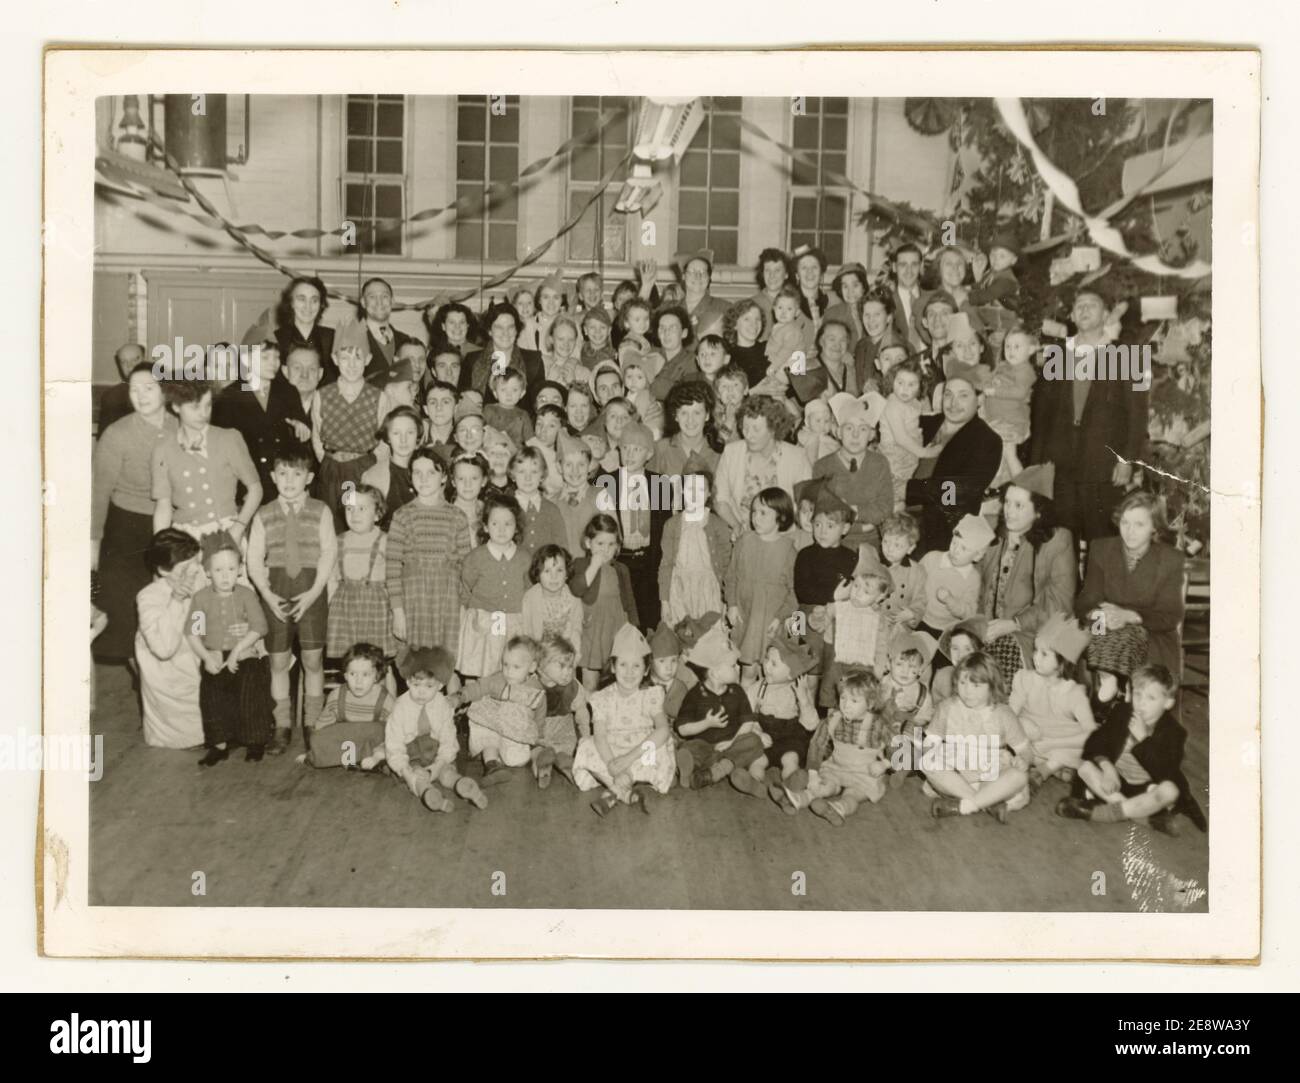 Photo de l'école primaire des années 1950 des célébrations de Noël, probablement dans la région de Leicester, au Royaume-Uni Banque D'Images